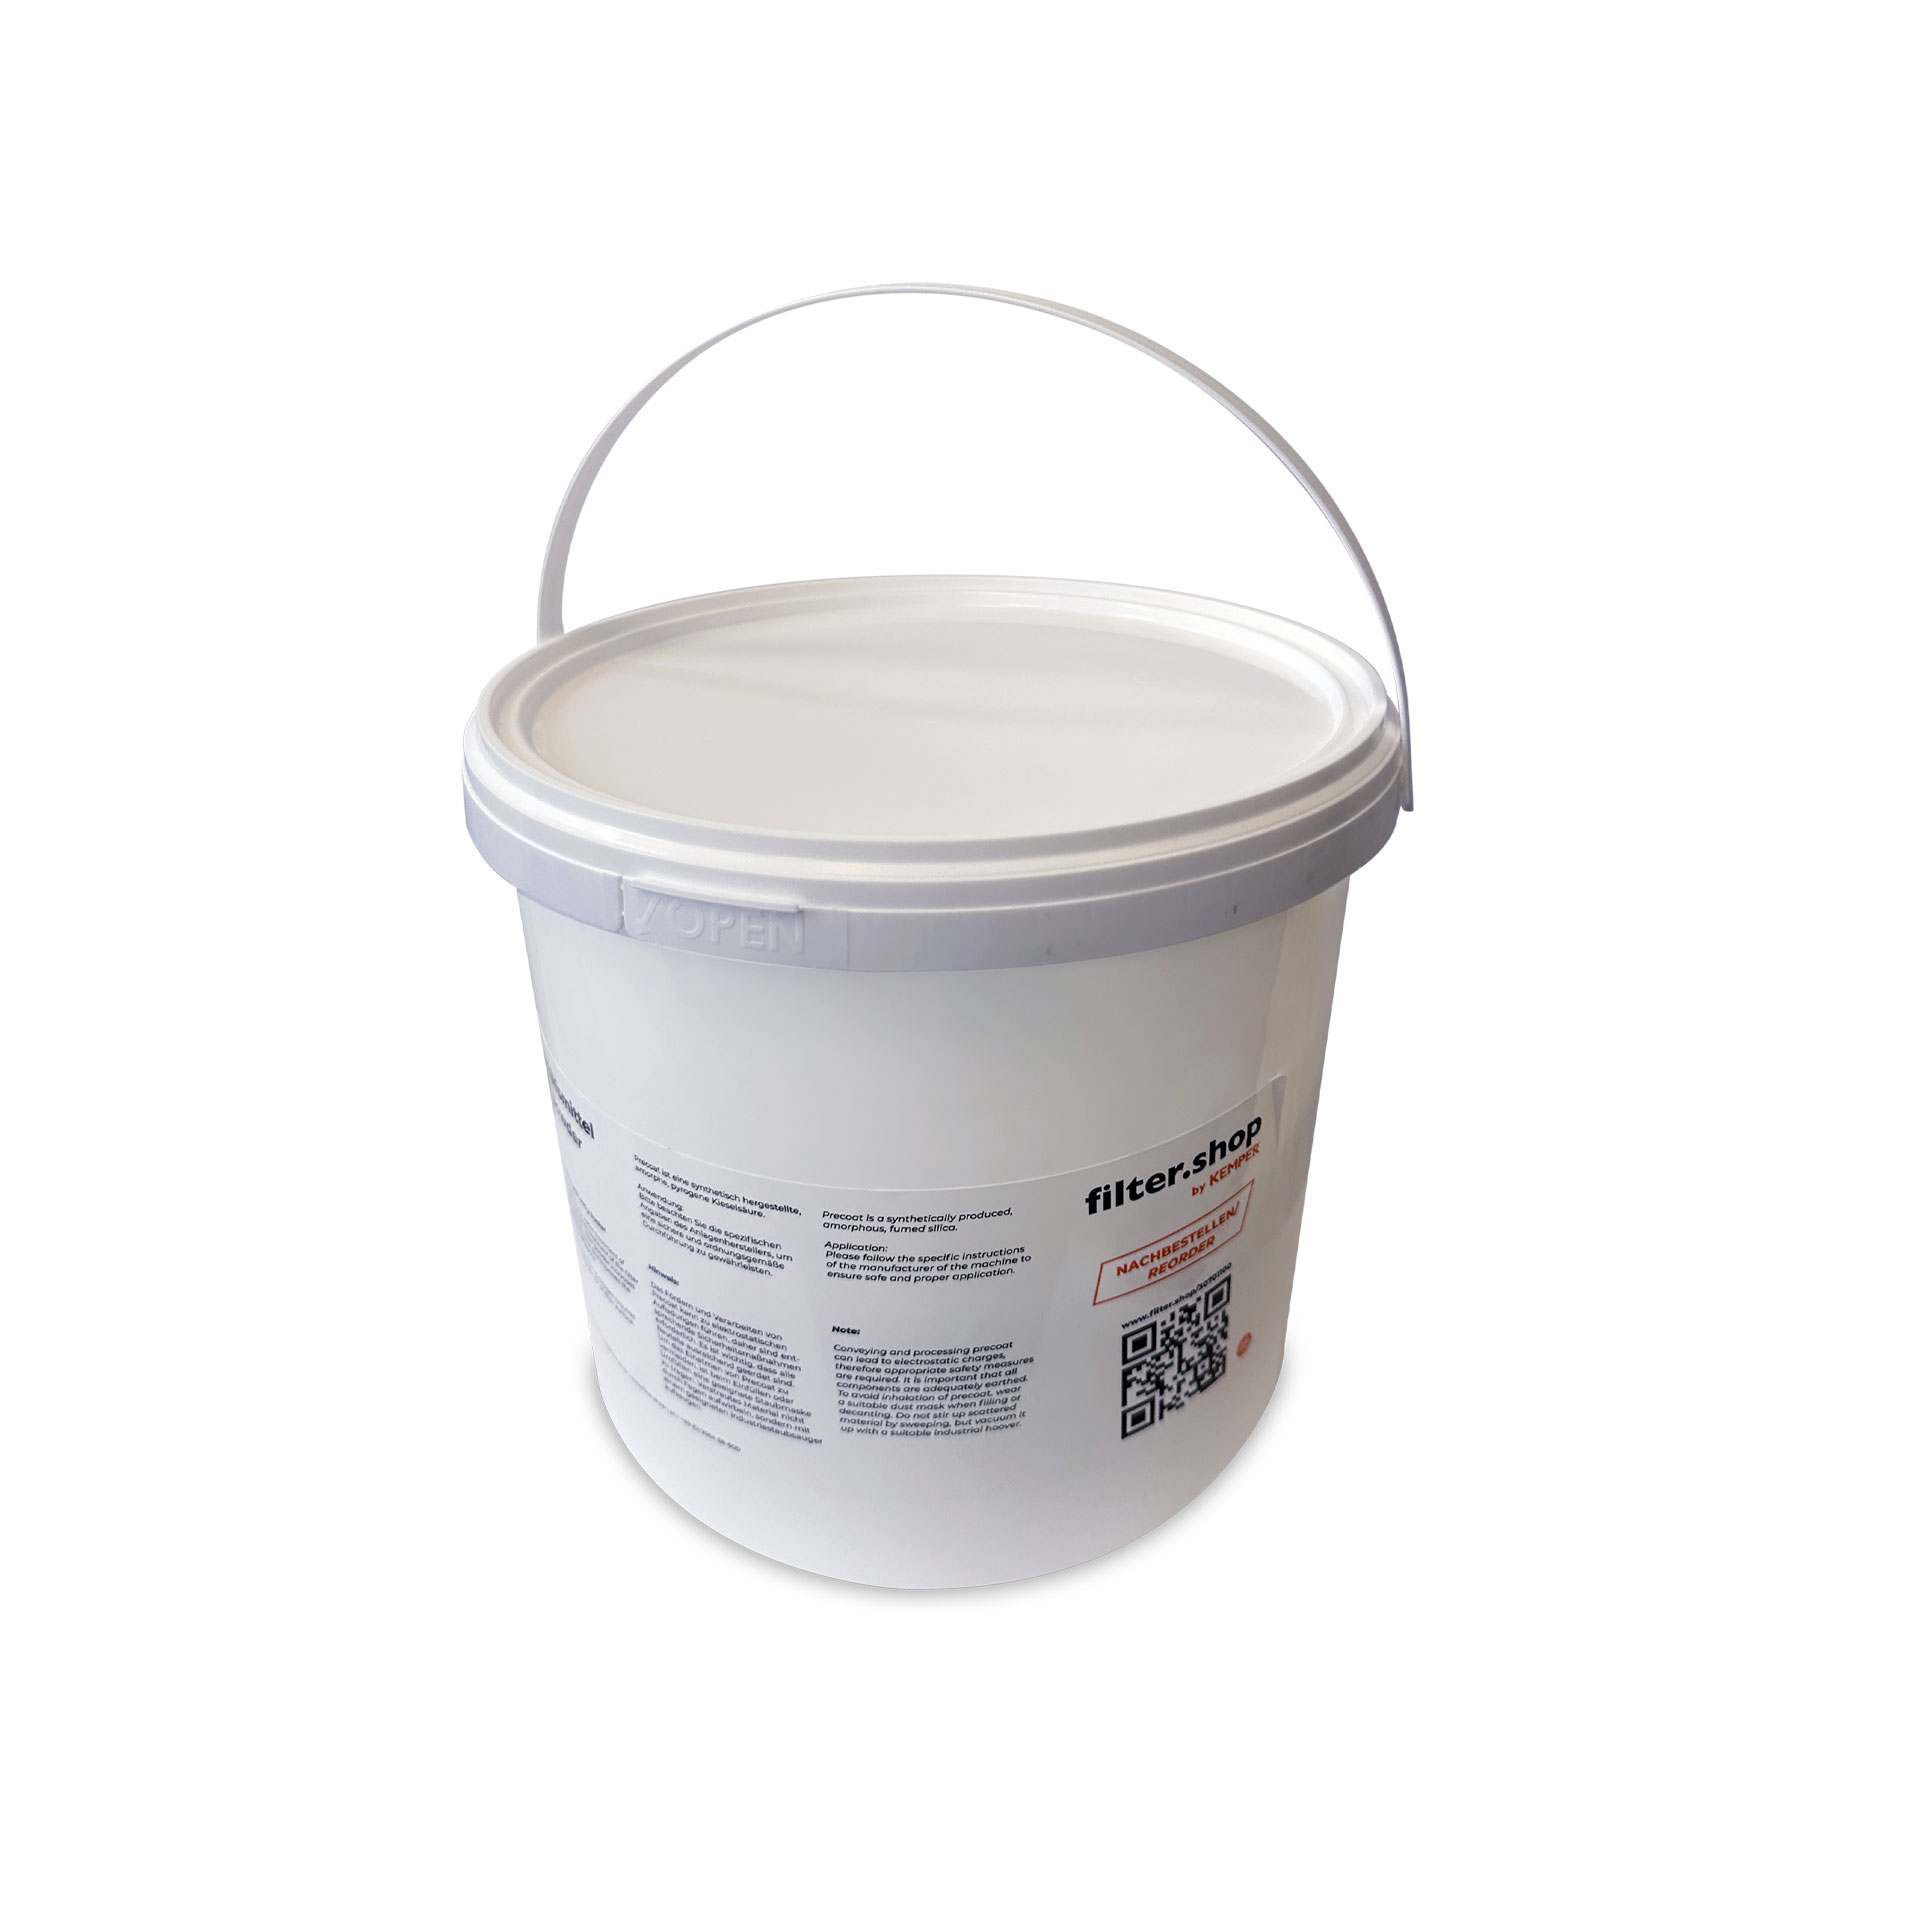 Precoat - filter powder - 400g bucket